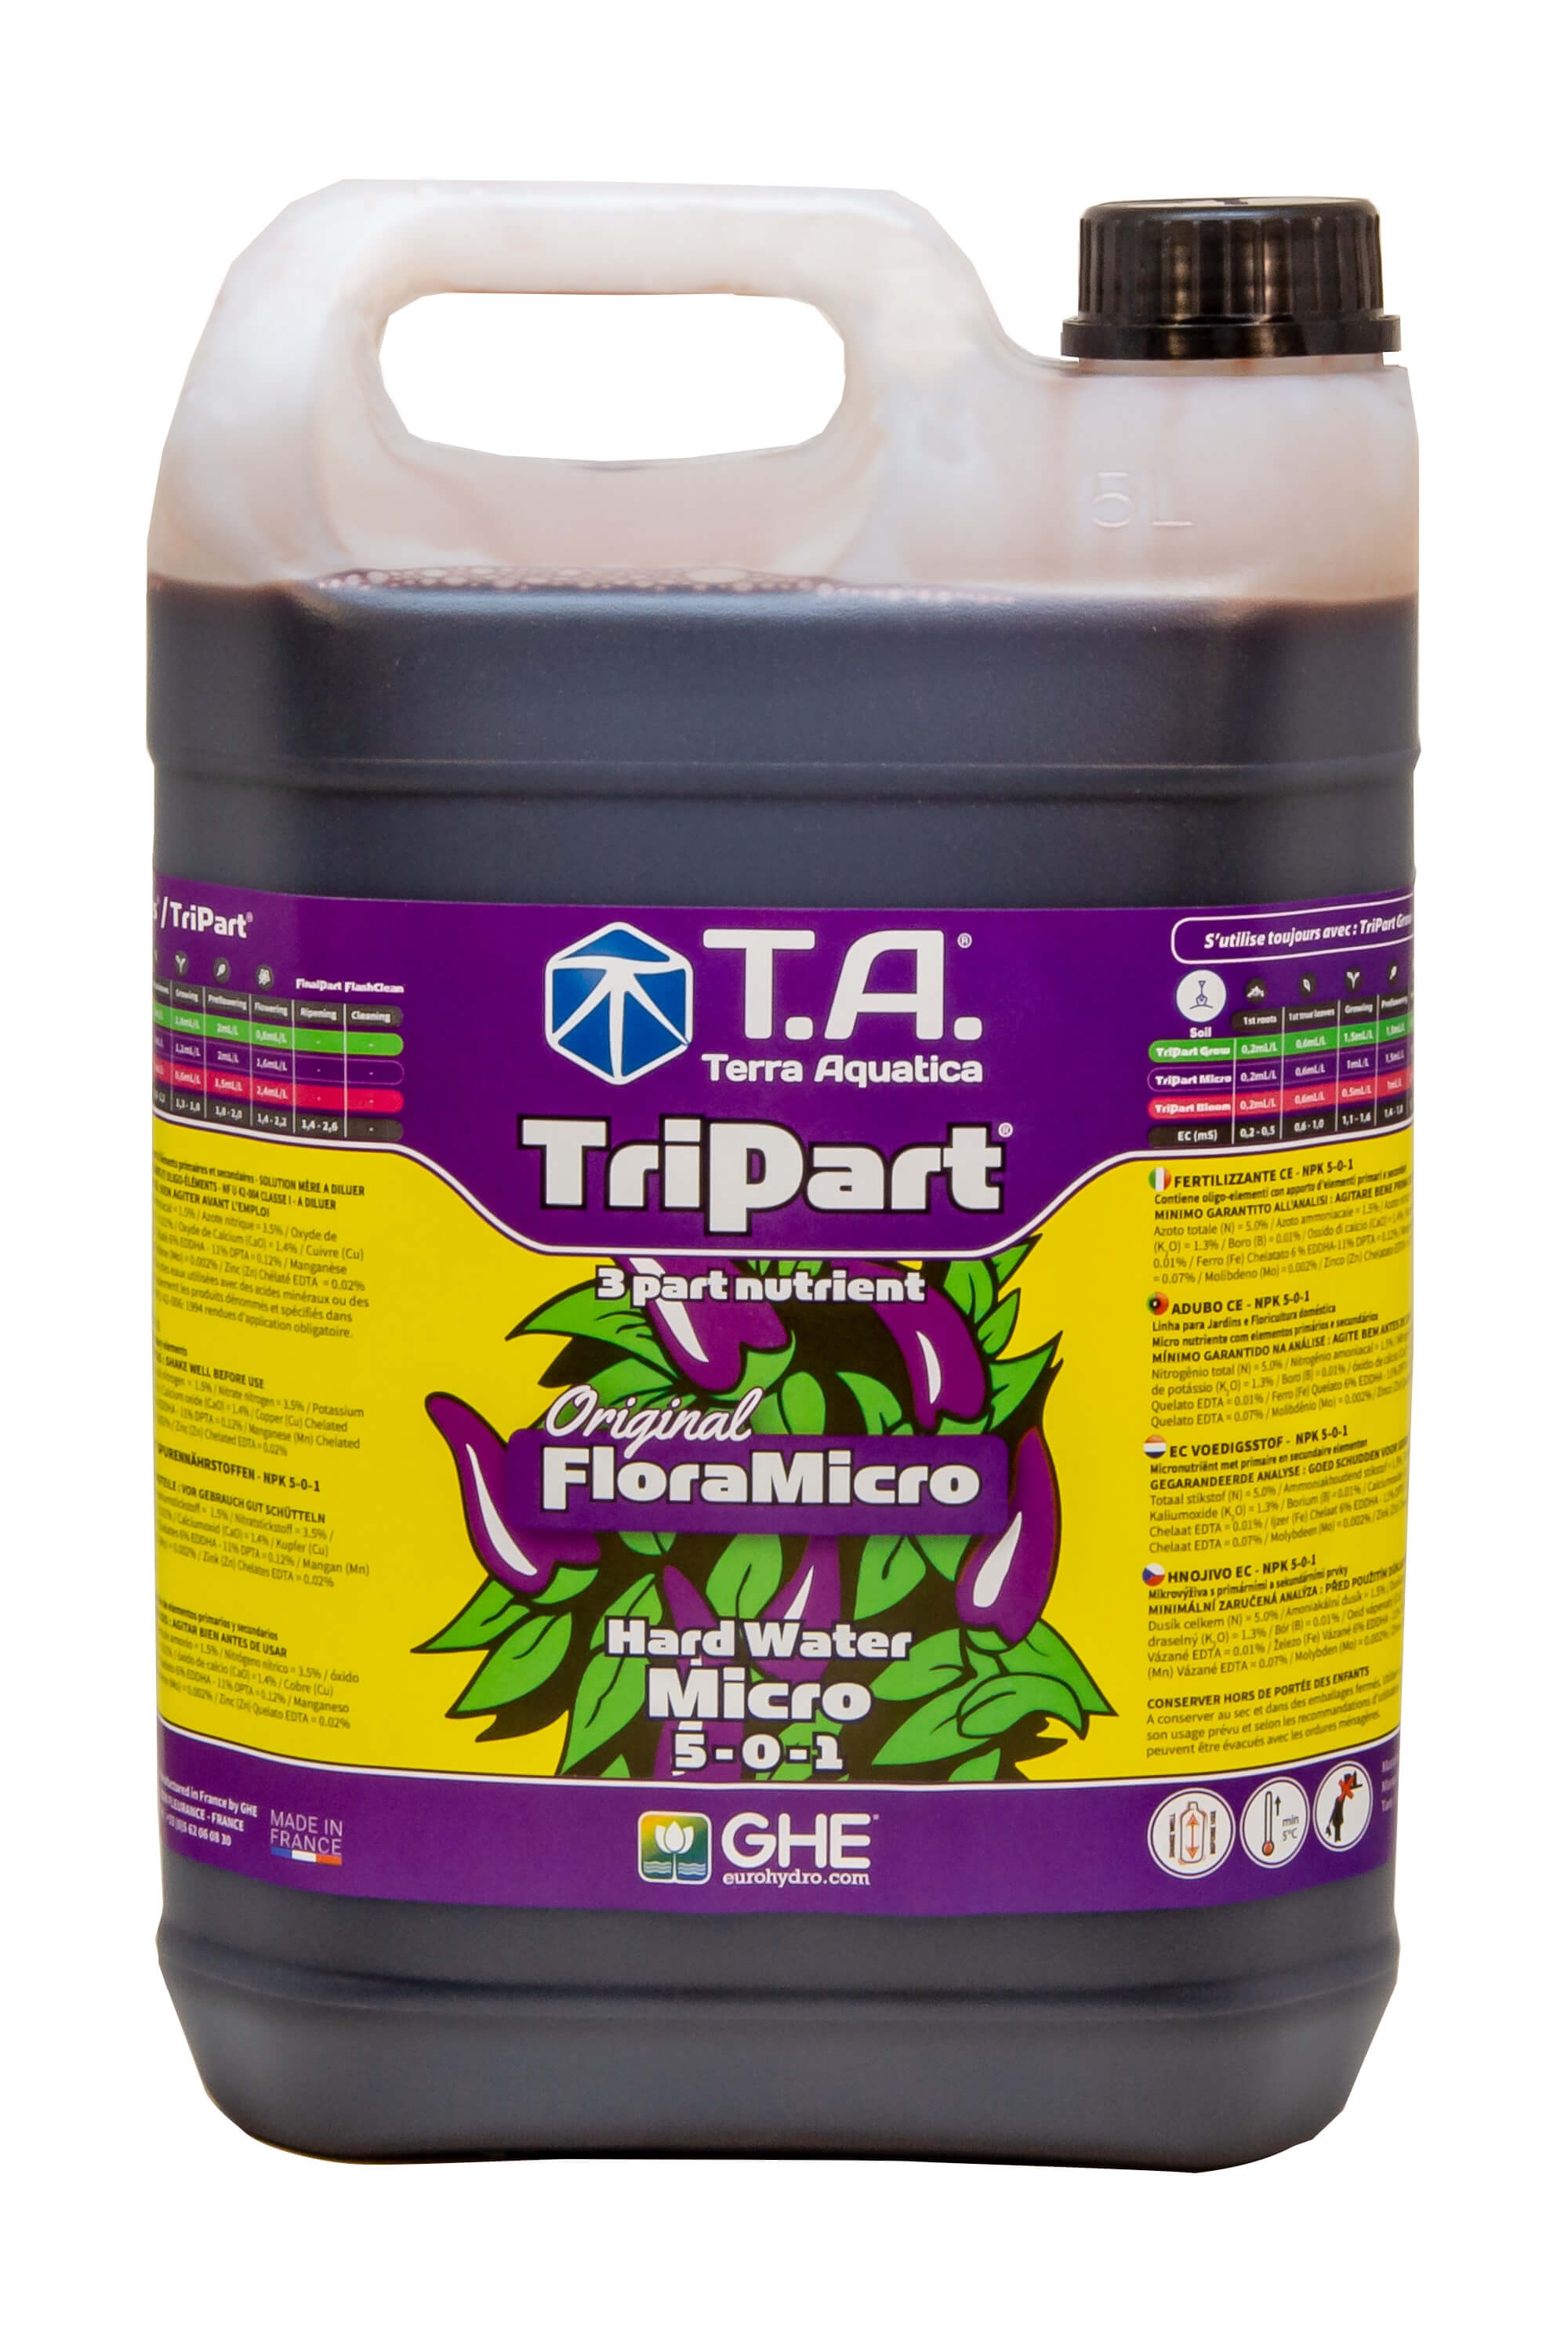 T.A. TriPart Micro HardWater 5L für hartes Wasser